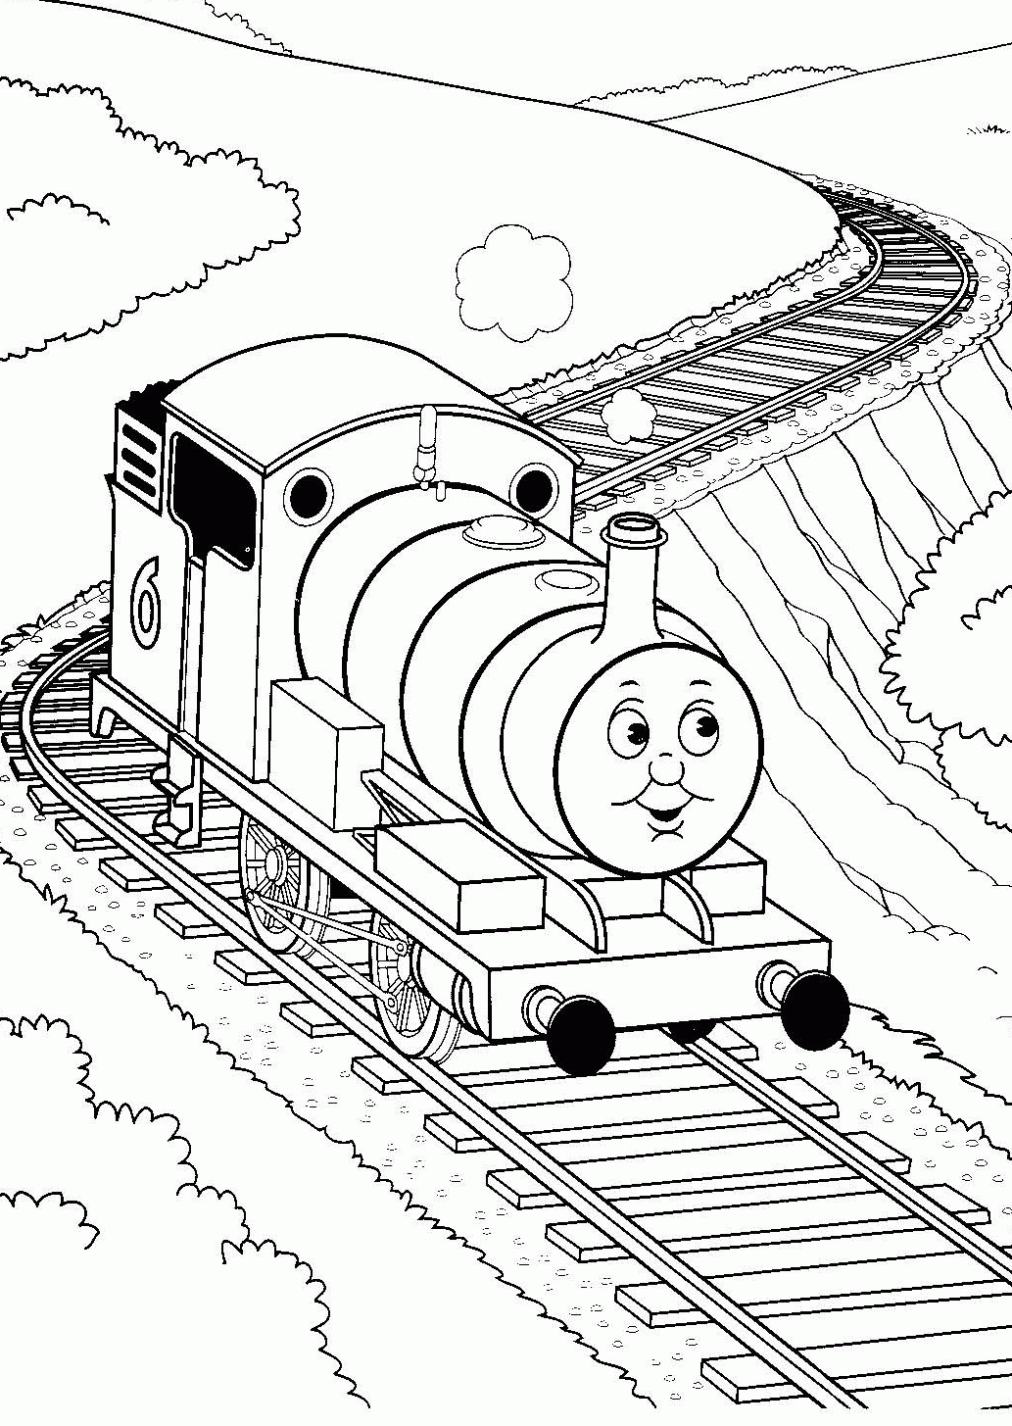 Dibujo de tren con vagones para colorear - Imagui